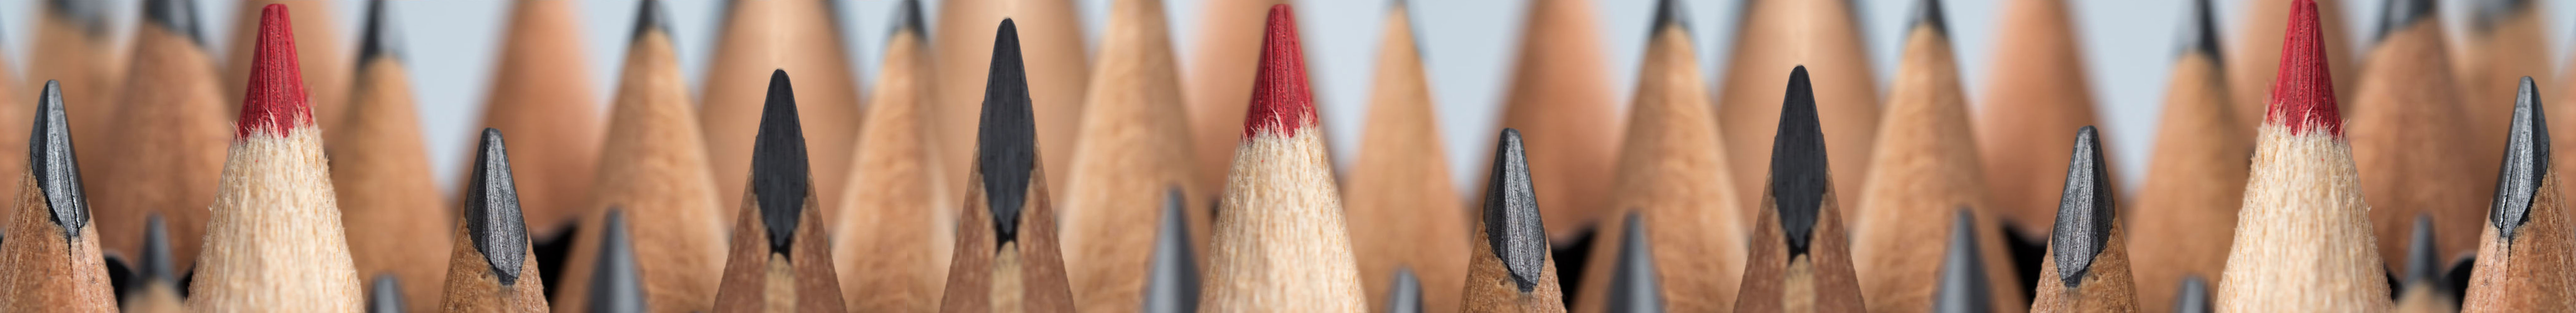 Jason Marriott Design header pencils